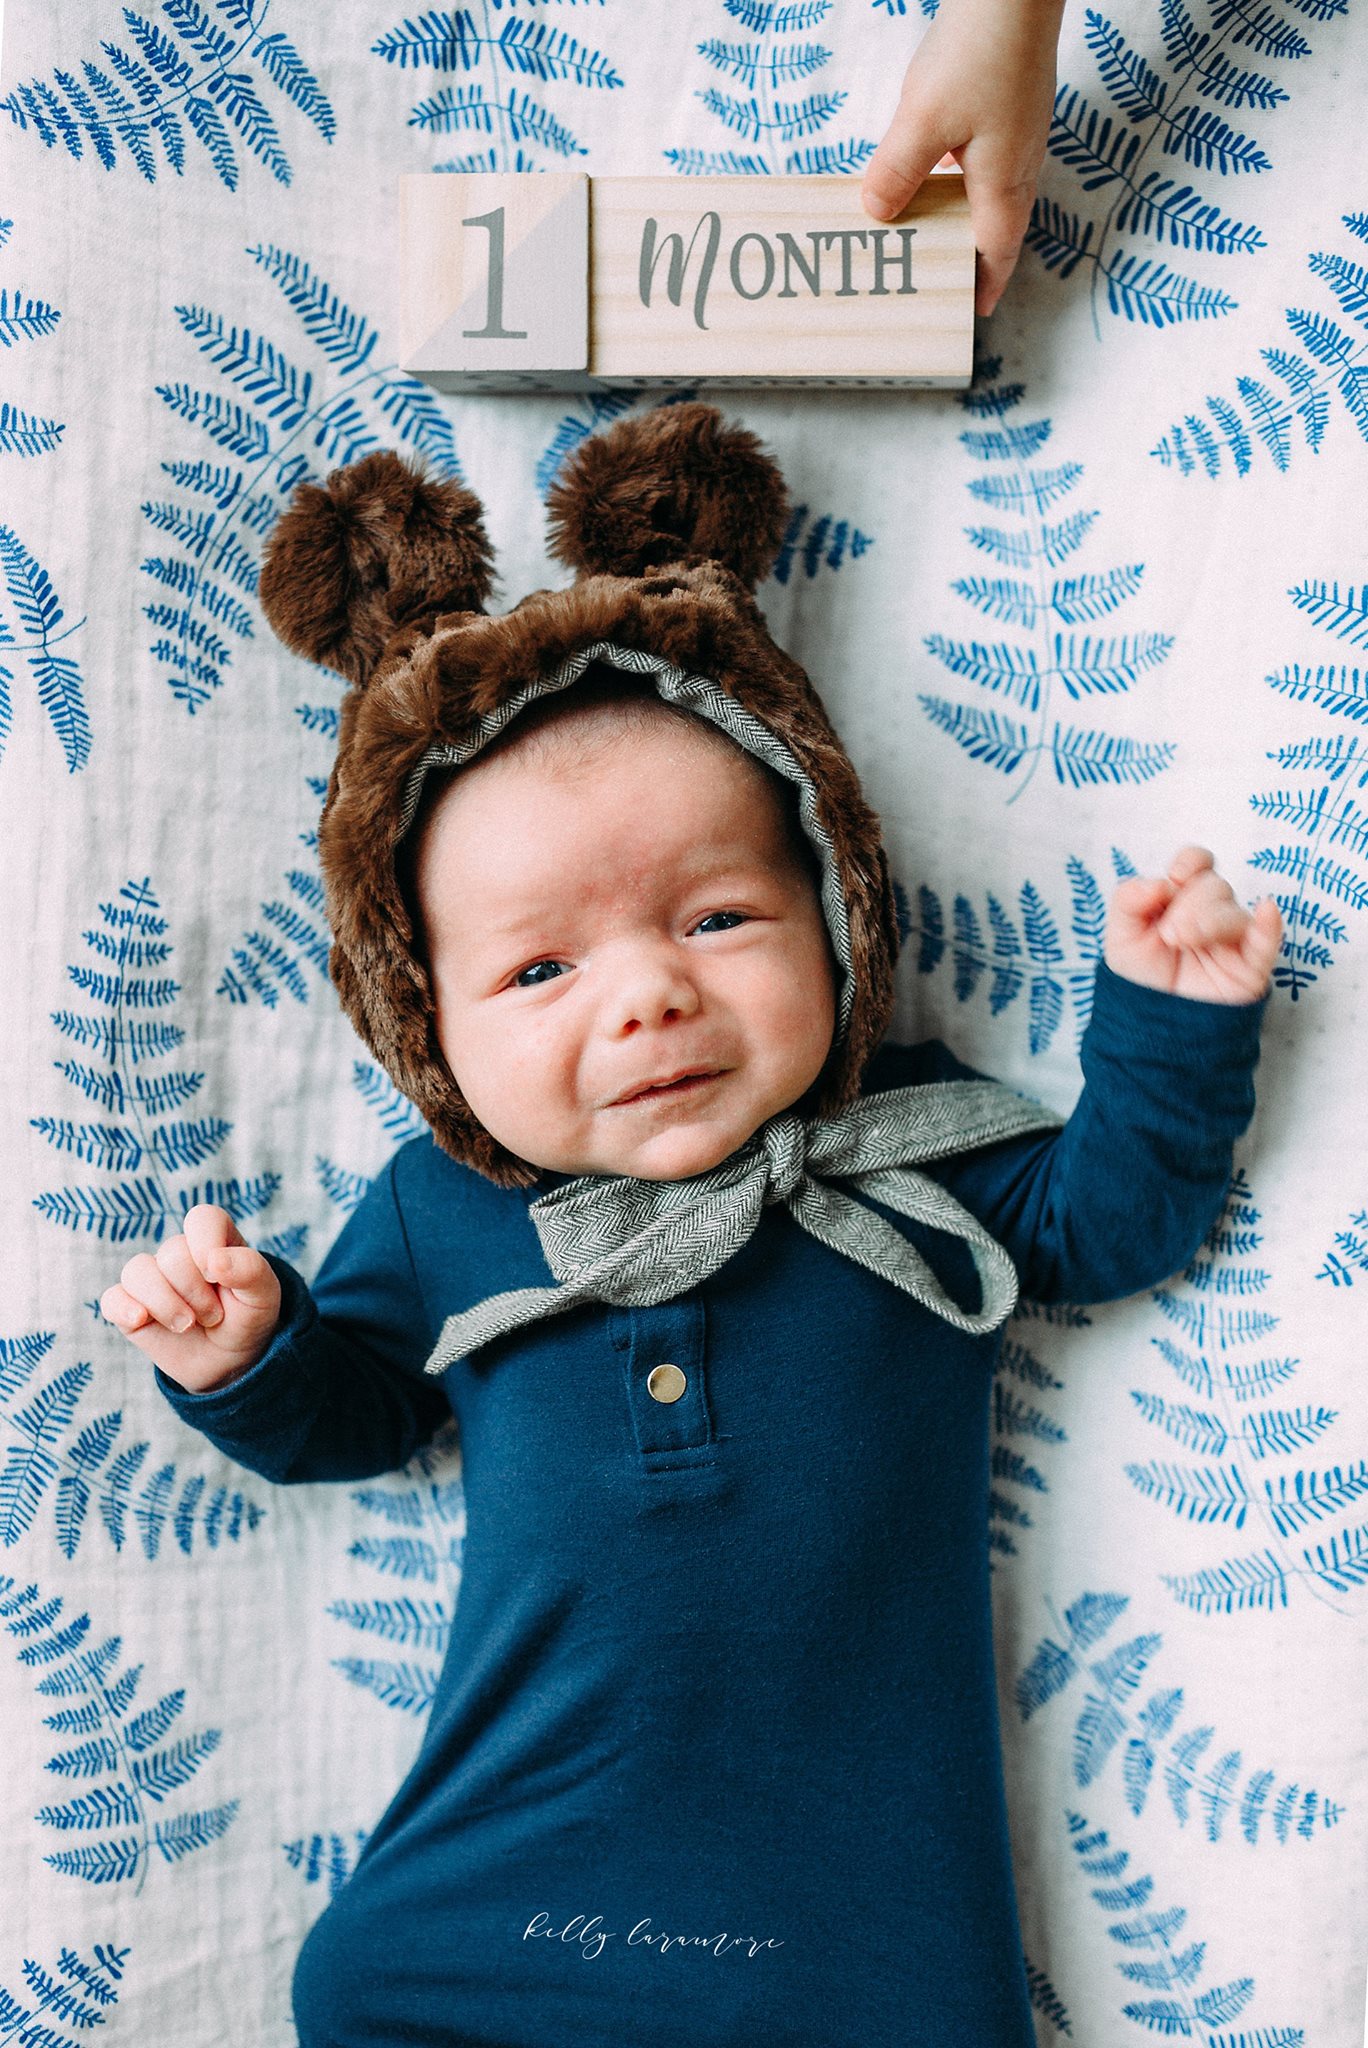 newborn, monthly baby photos, one month old, baby bear hat, blue onesie